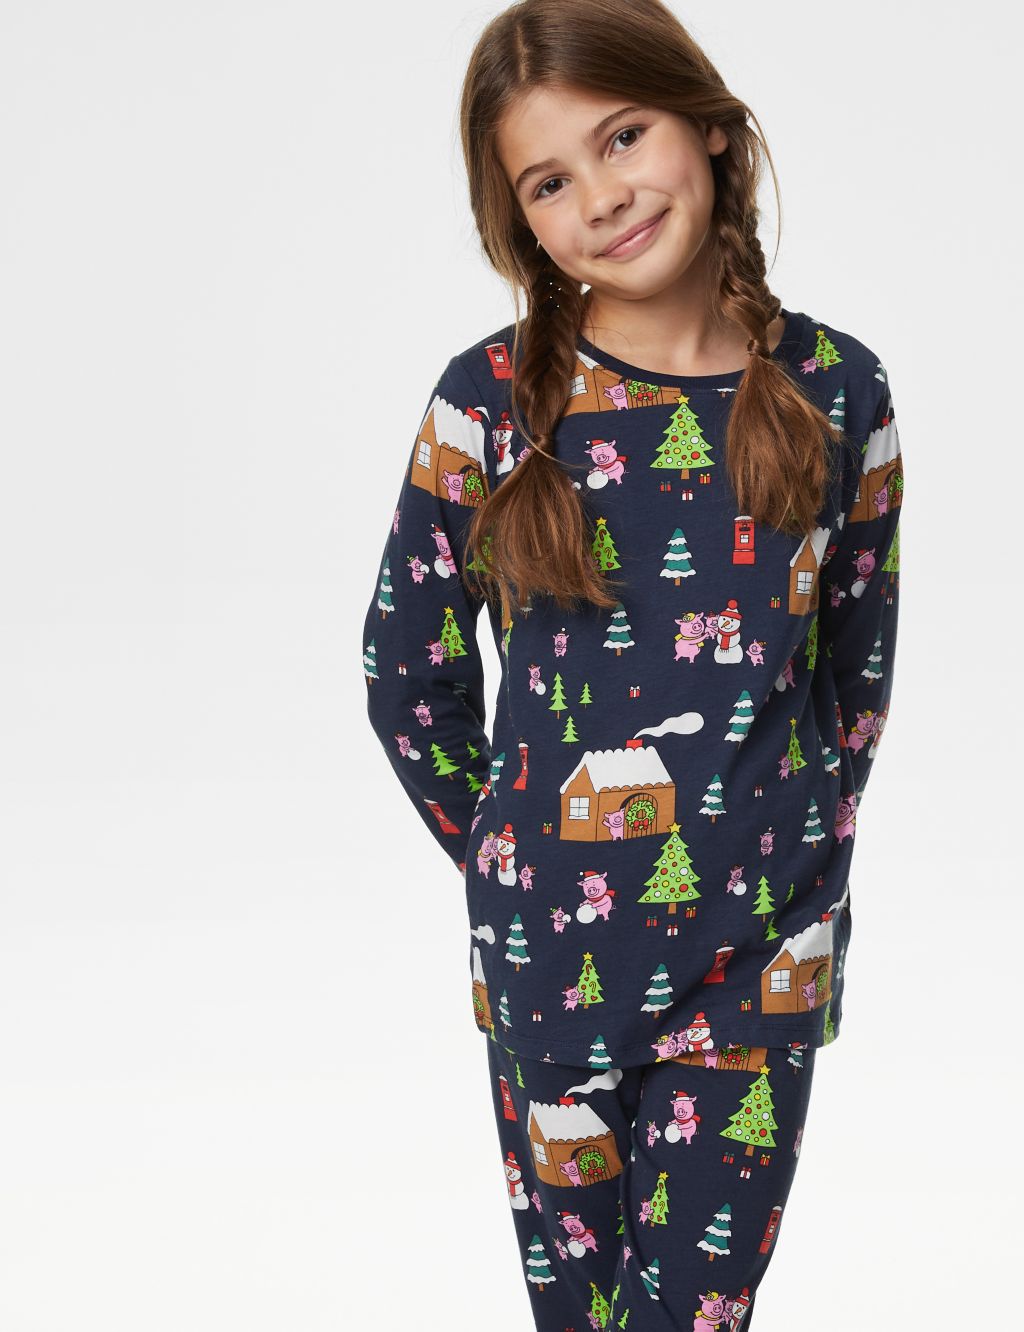 Pure Cotton Percy Pig™ Christmas Pyjamas (1-16 Yrs) image 1